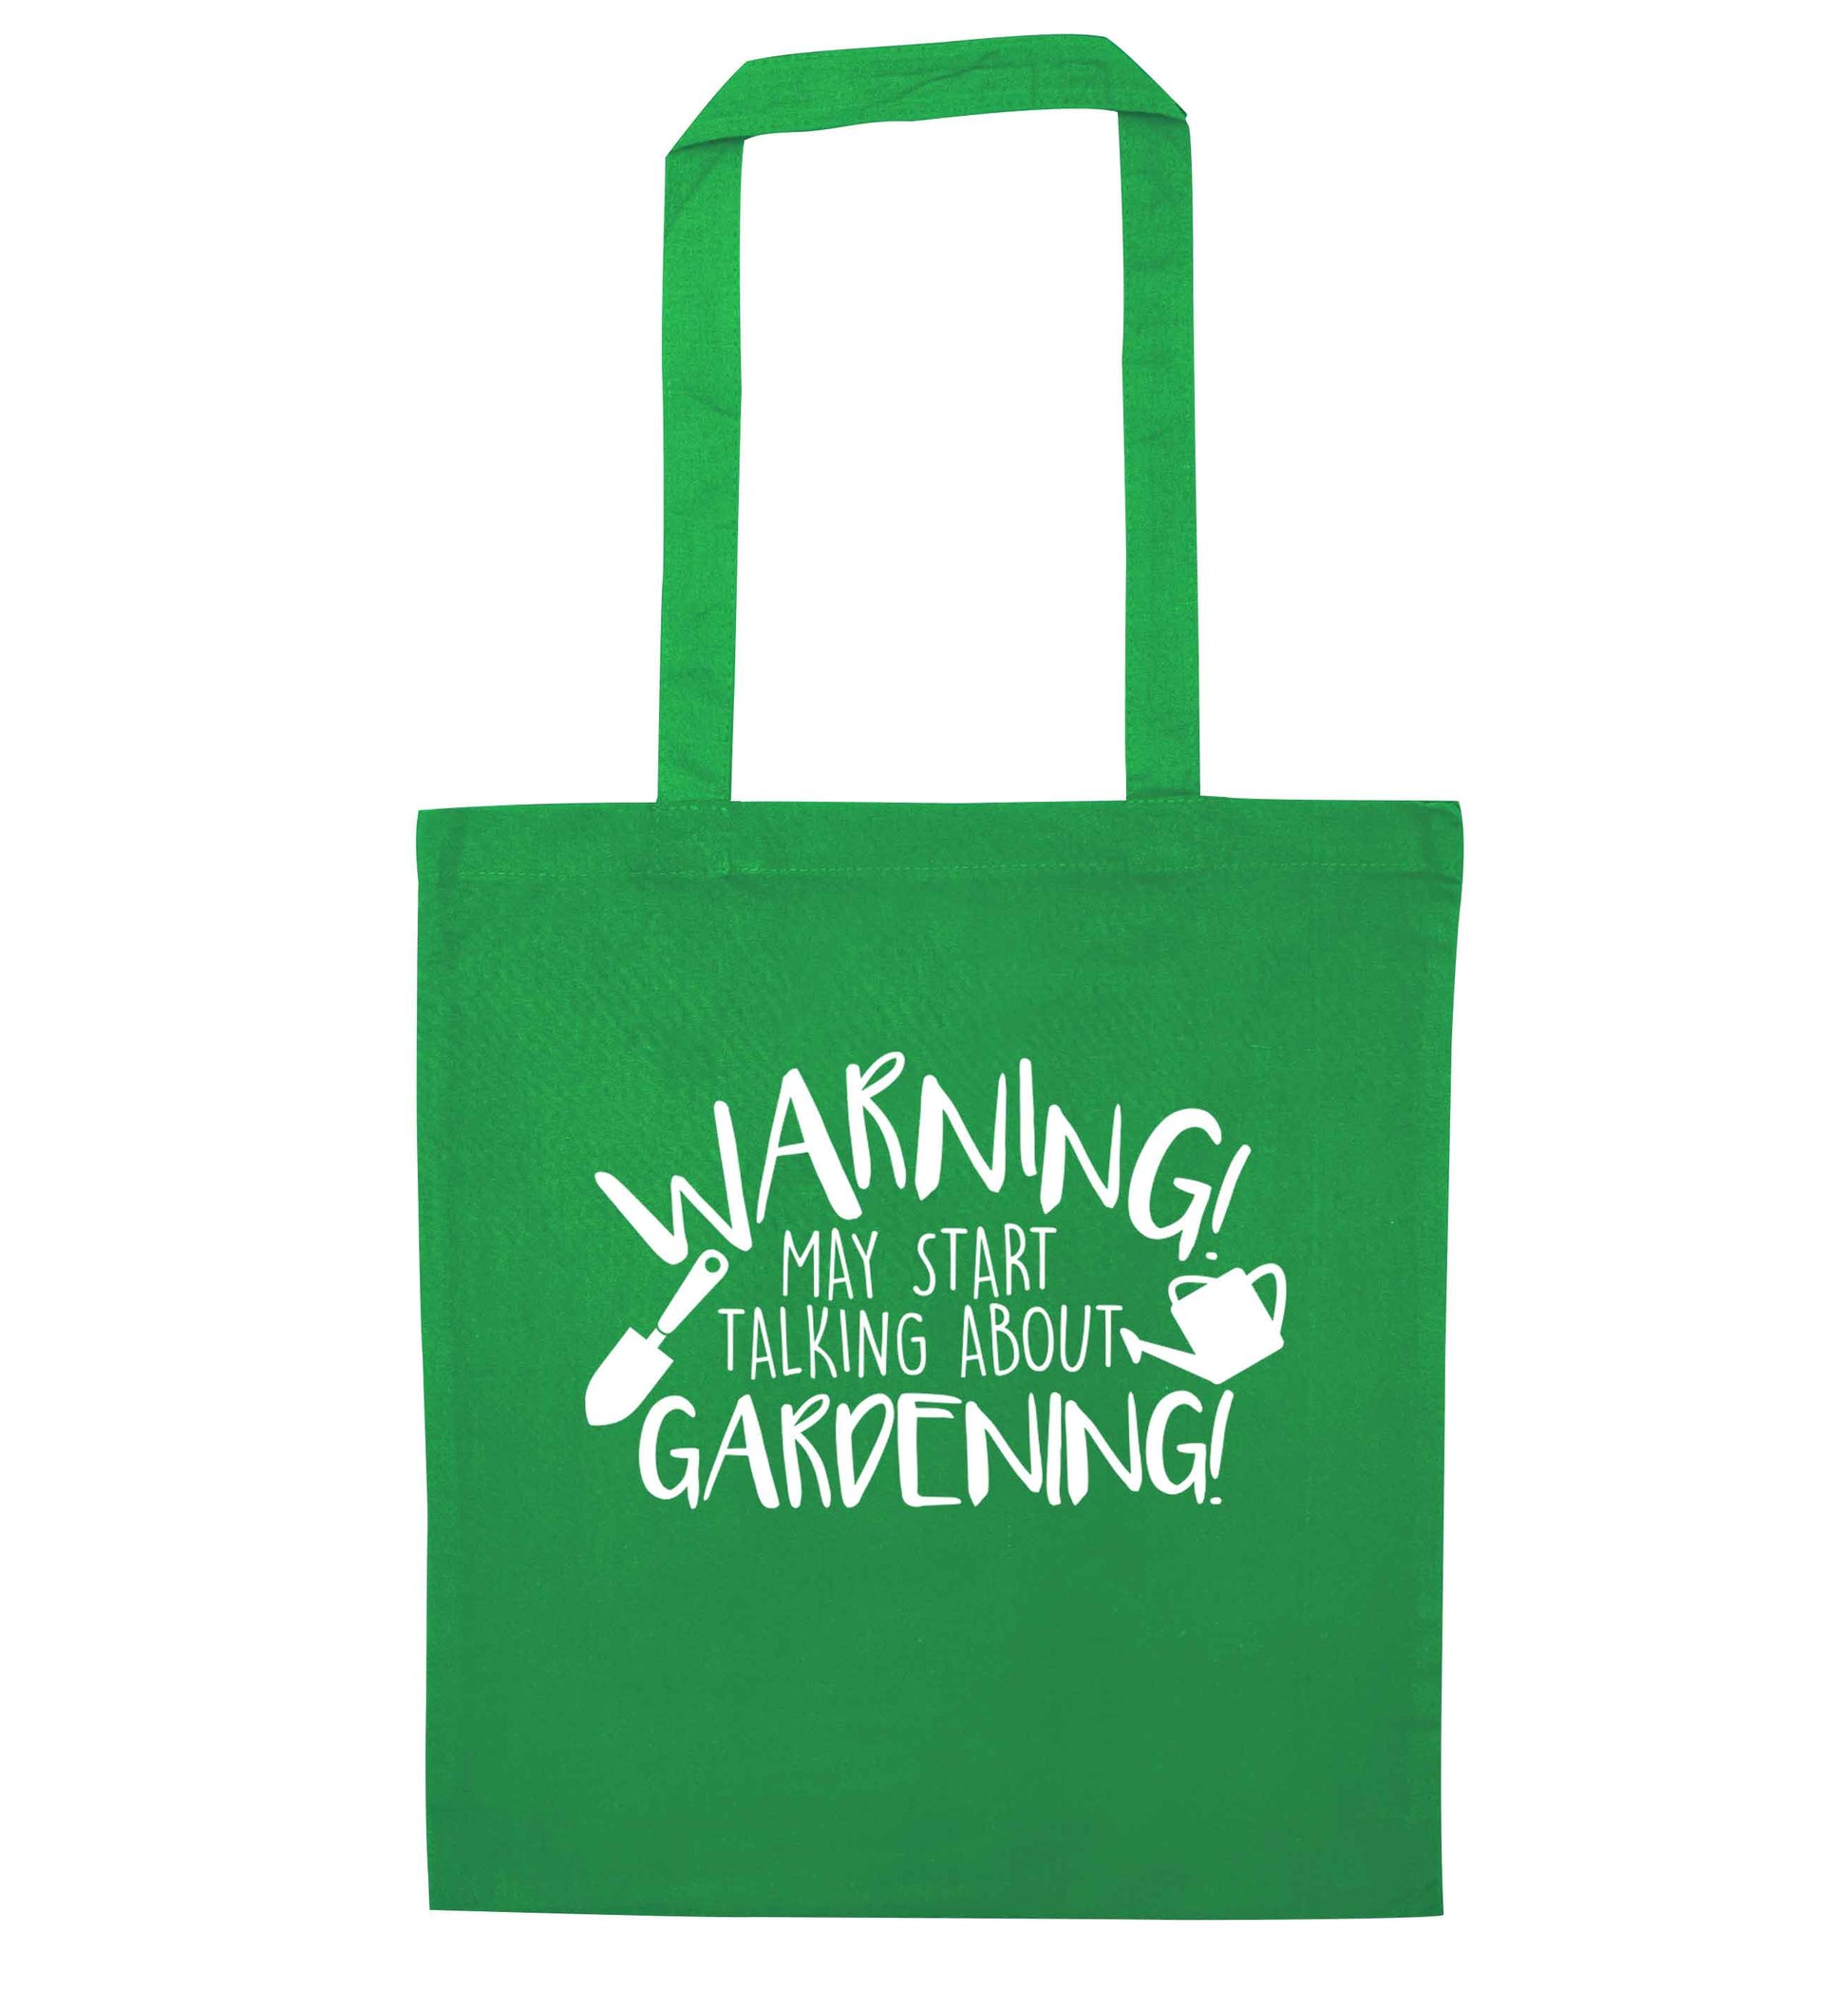 Warning may start talking about gardening green tote bag